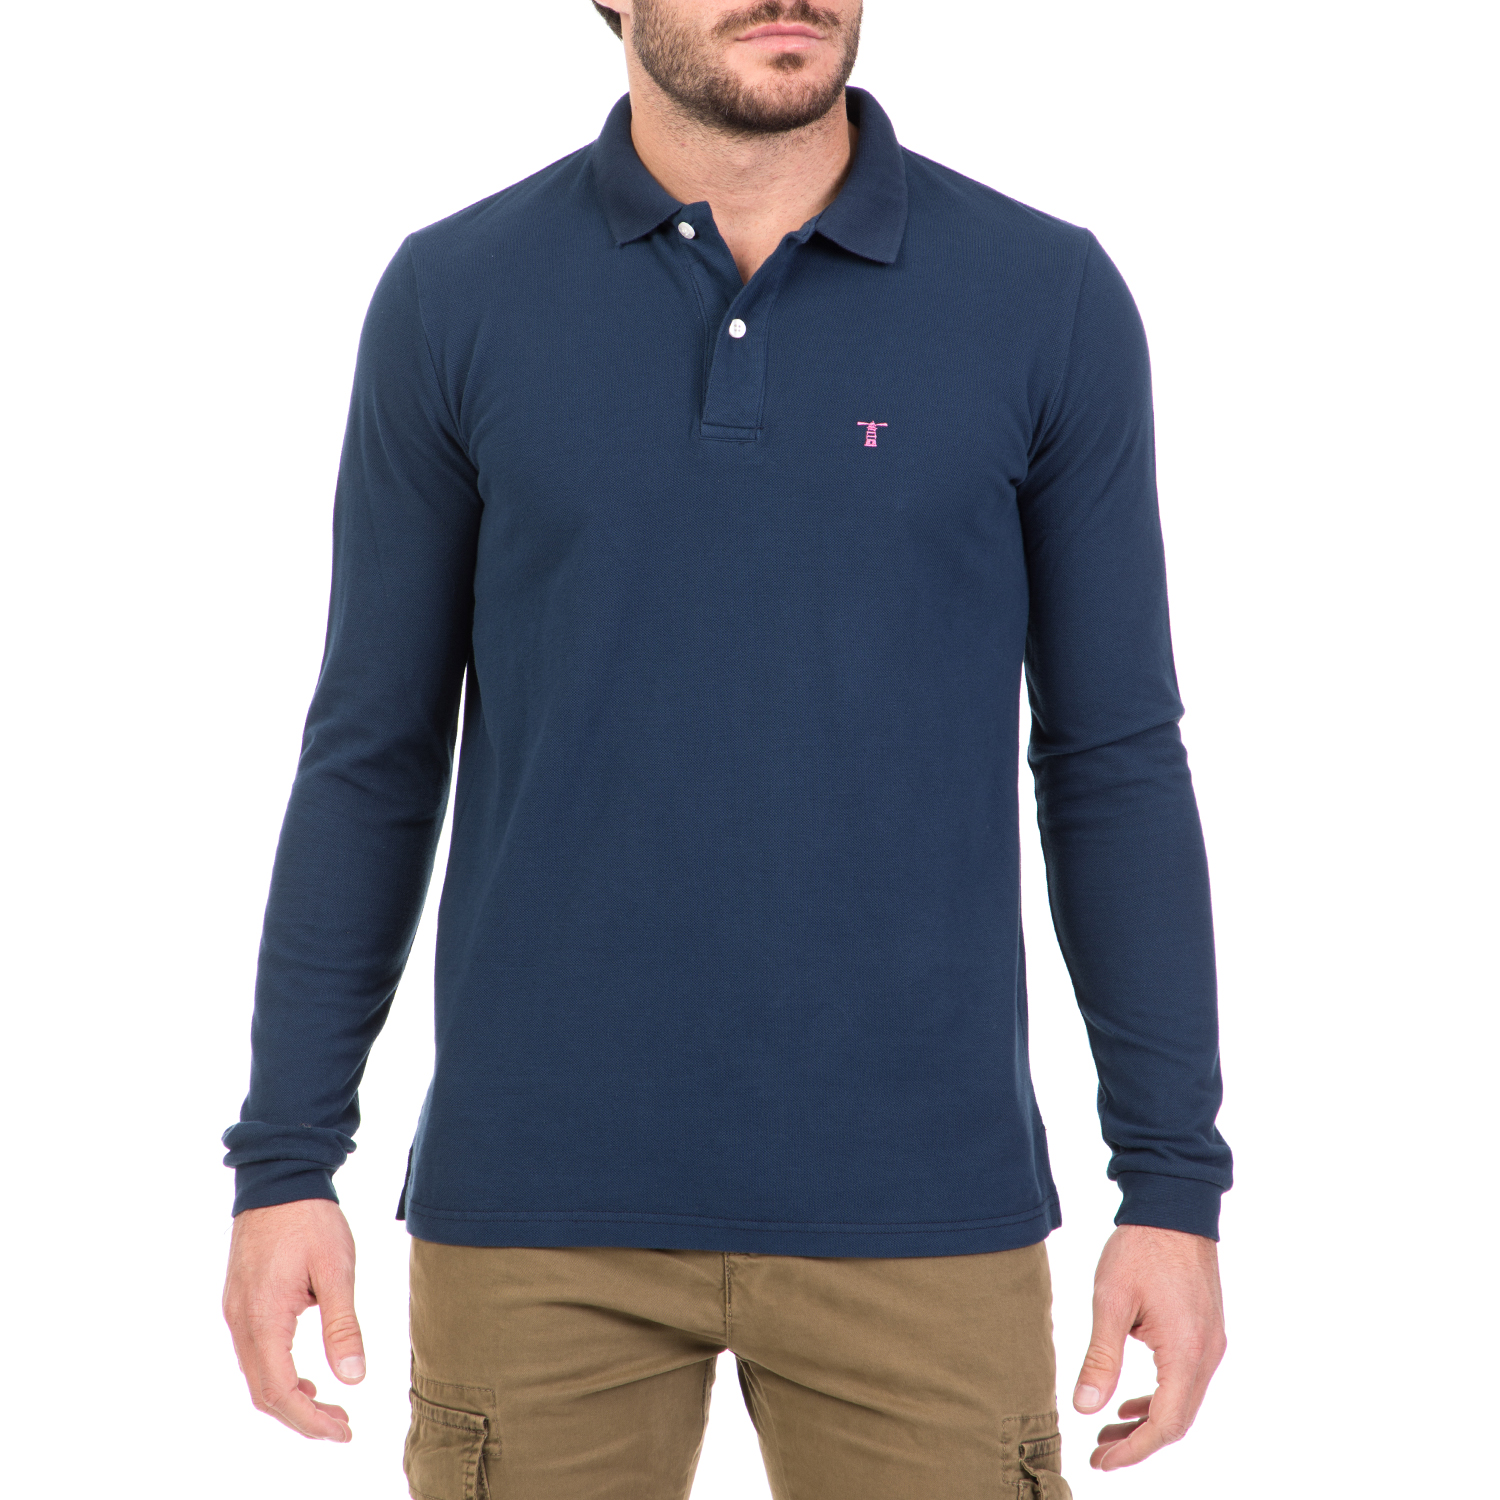 Ανδρικά/Ρούχα/Μπλούζες/Πόλο HAMPTONS - Ανδρική μακρυμάνικη πόλο μπλούζα HAMPTONS μπλε